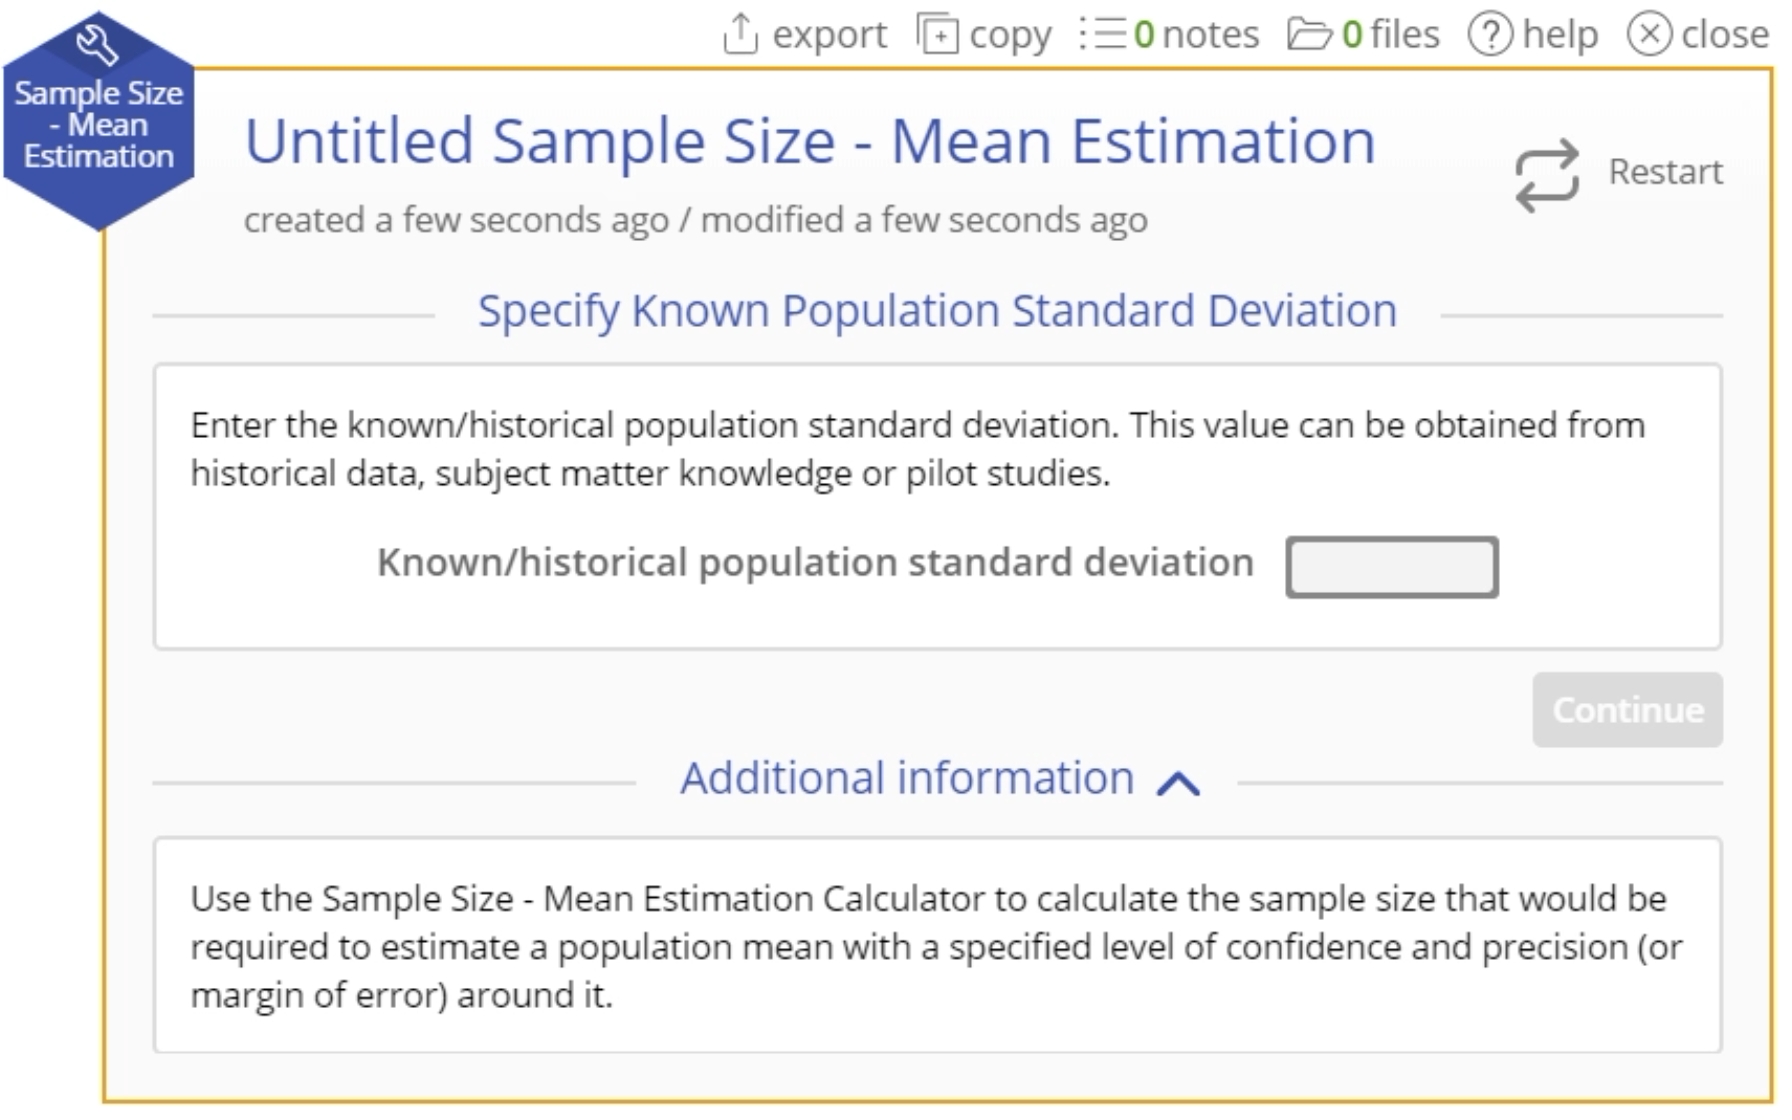 Start up menu for sample size estimation.